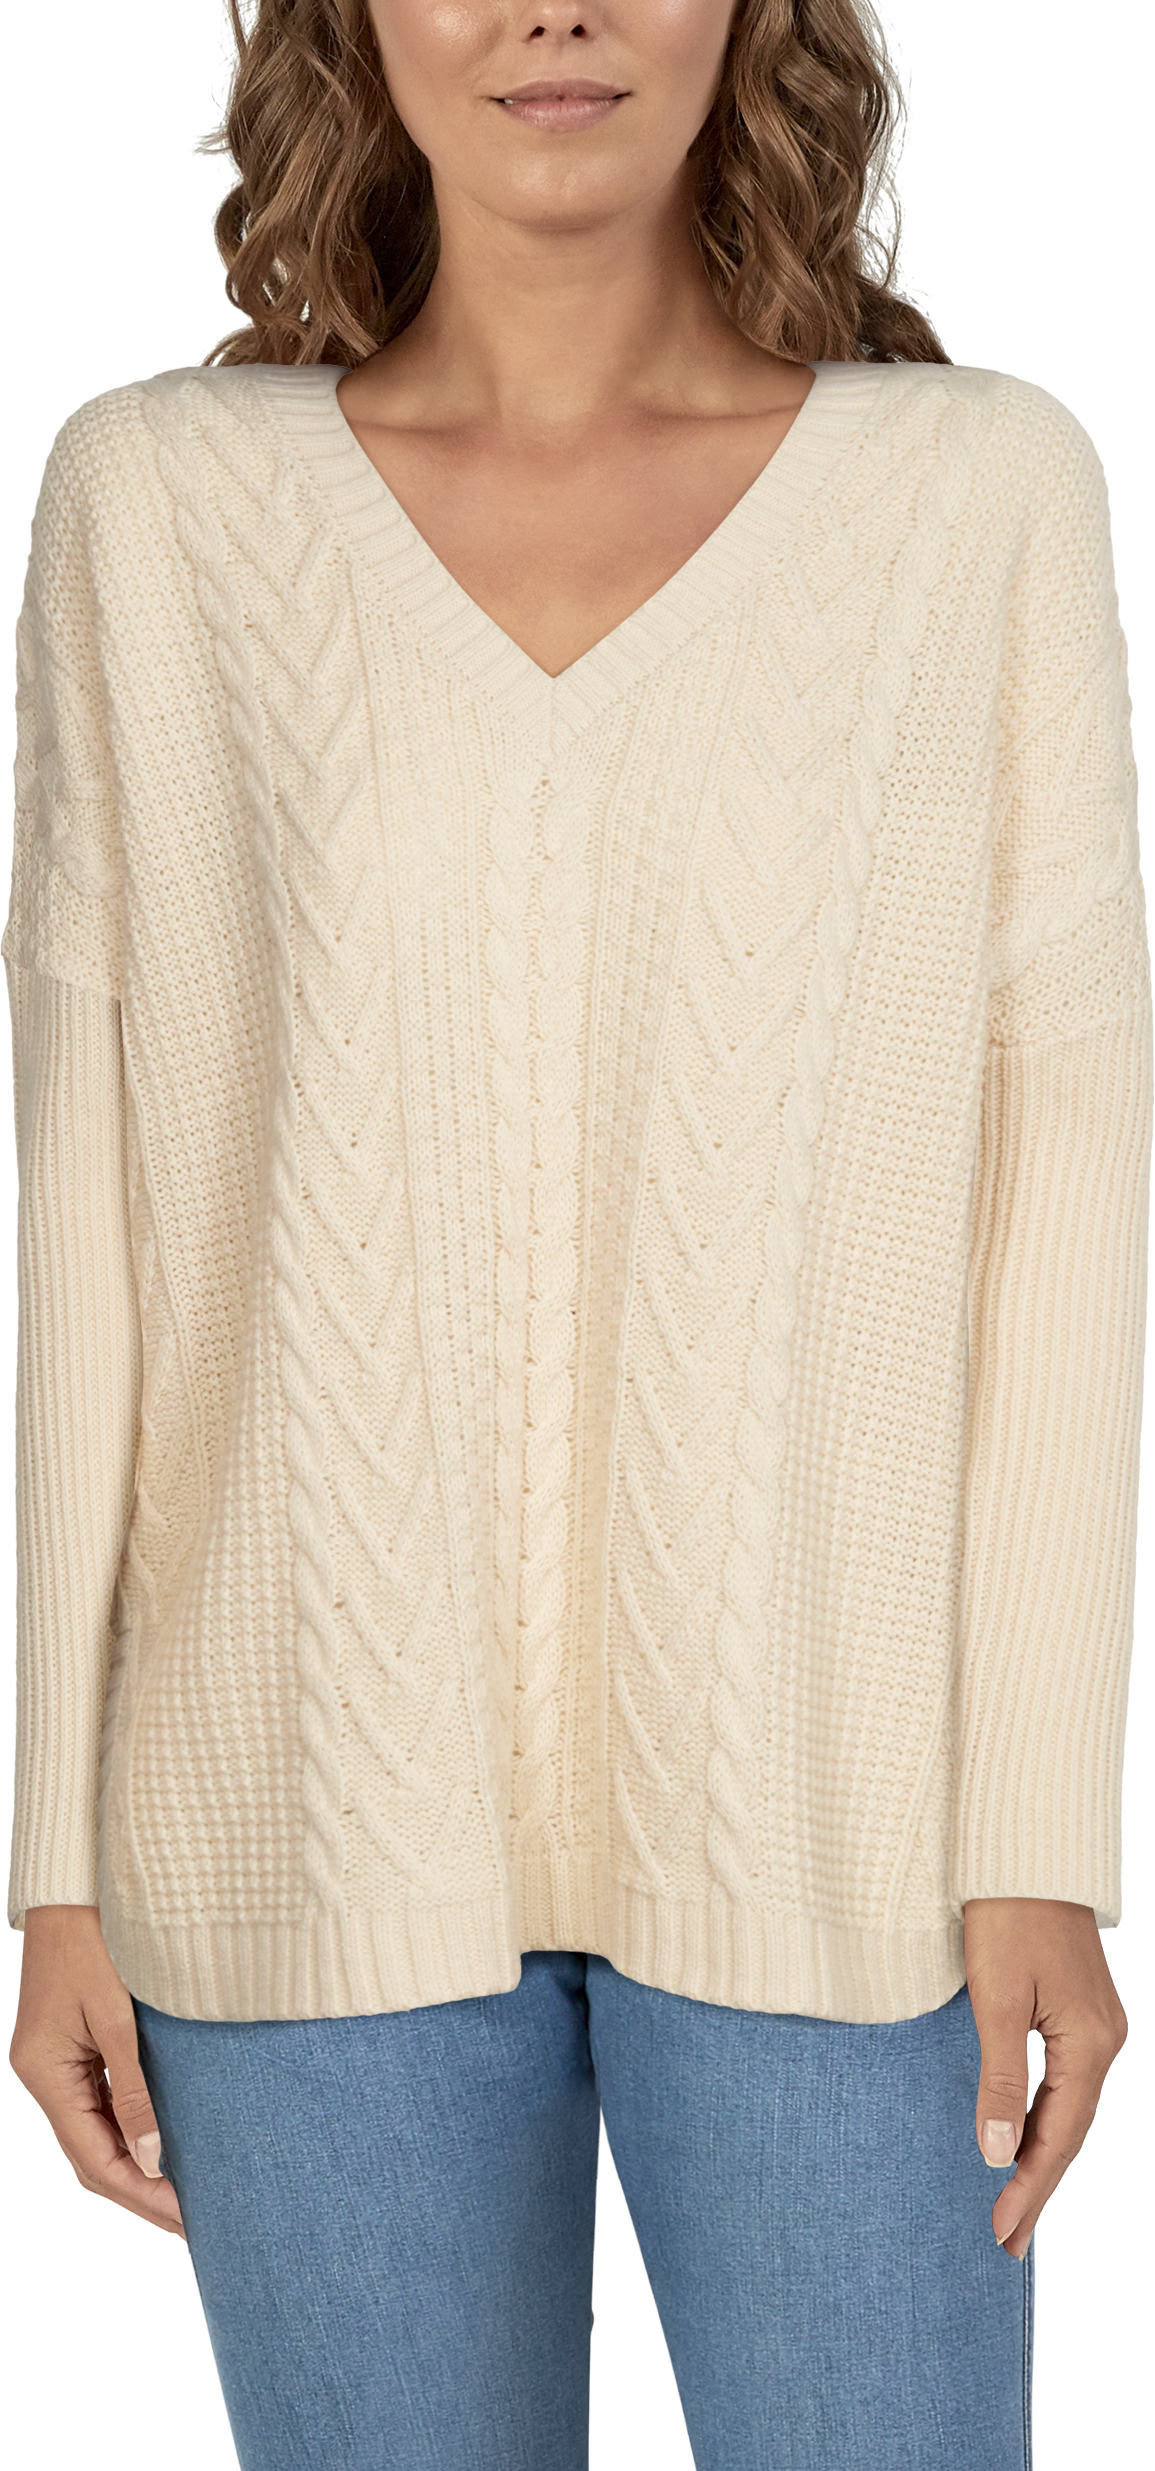 Fashion Sweater Vest Men Fall Winter V-neck Knitting Criss-cross @ Best  Price Online